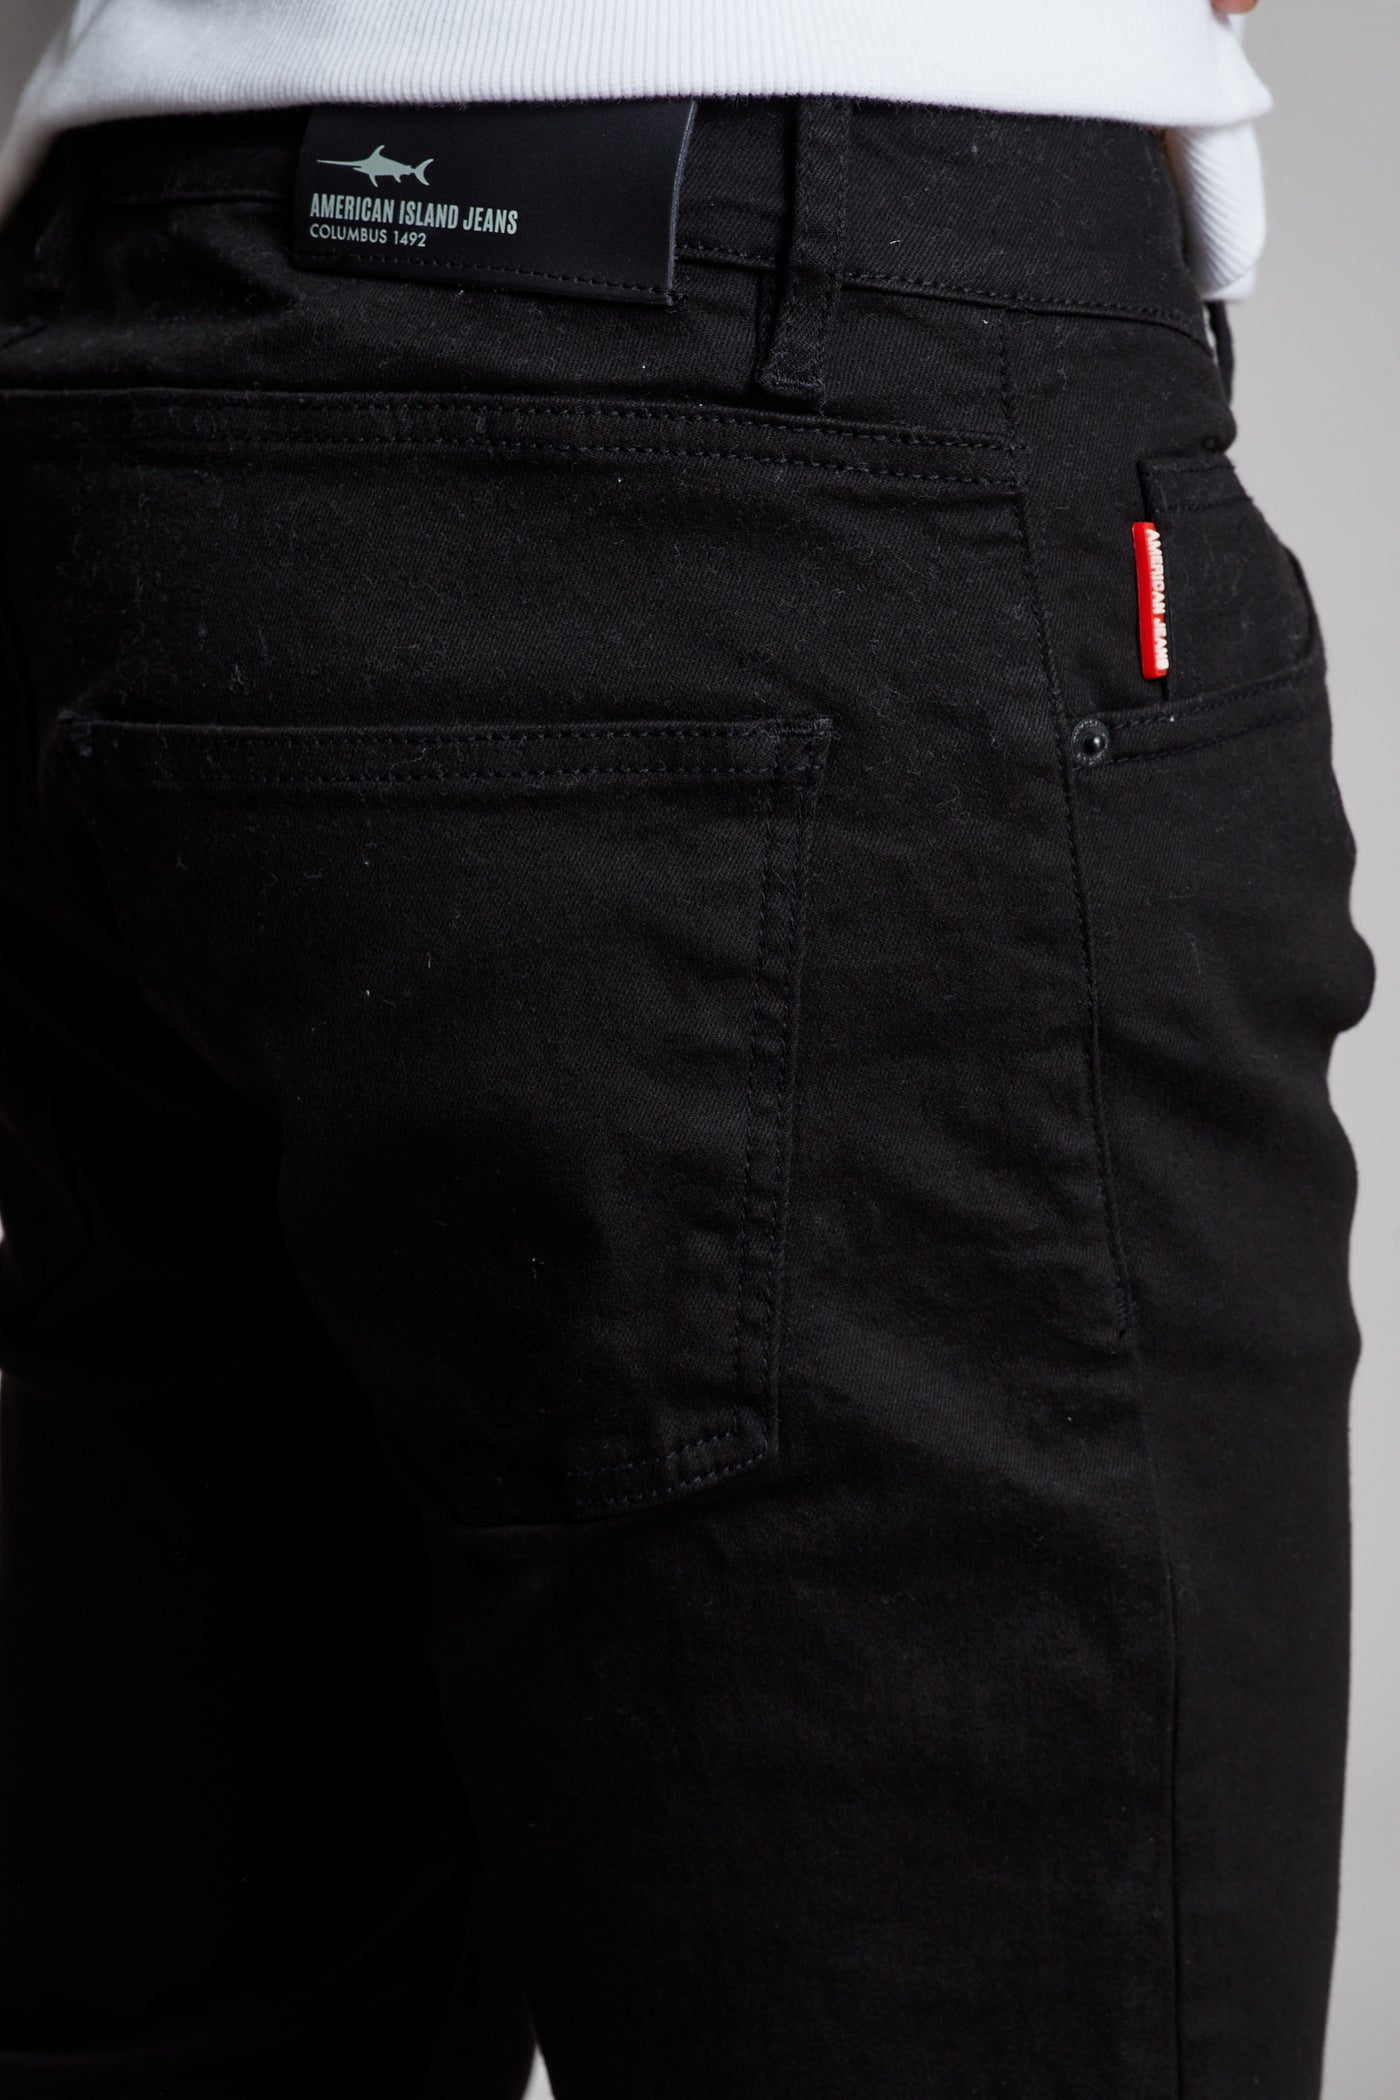 מכנס ג'ינס סלים ZO בצבע שחור